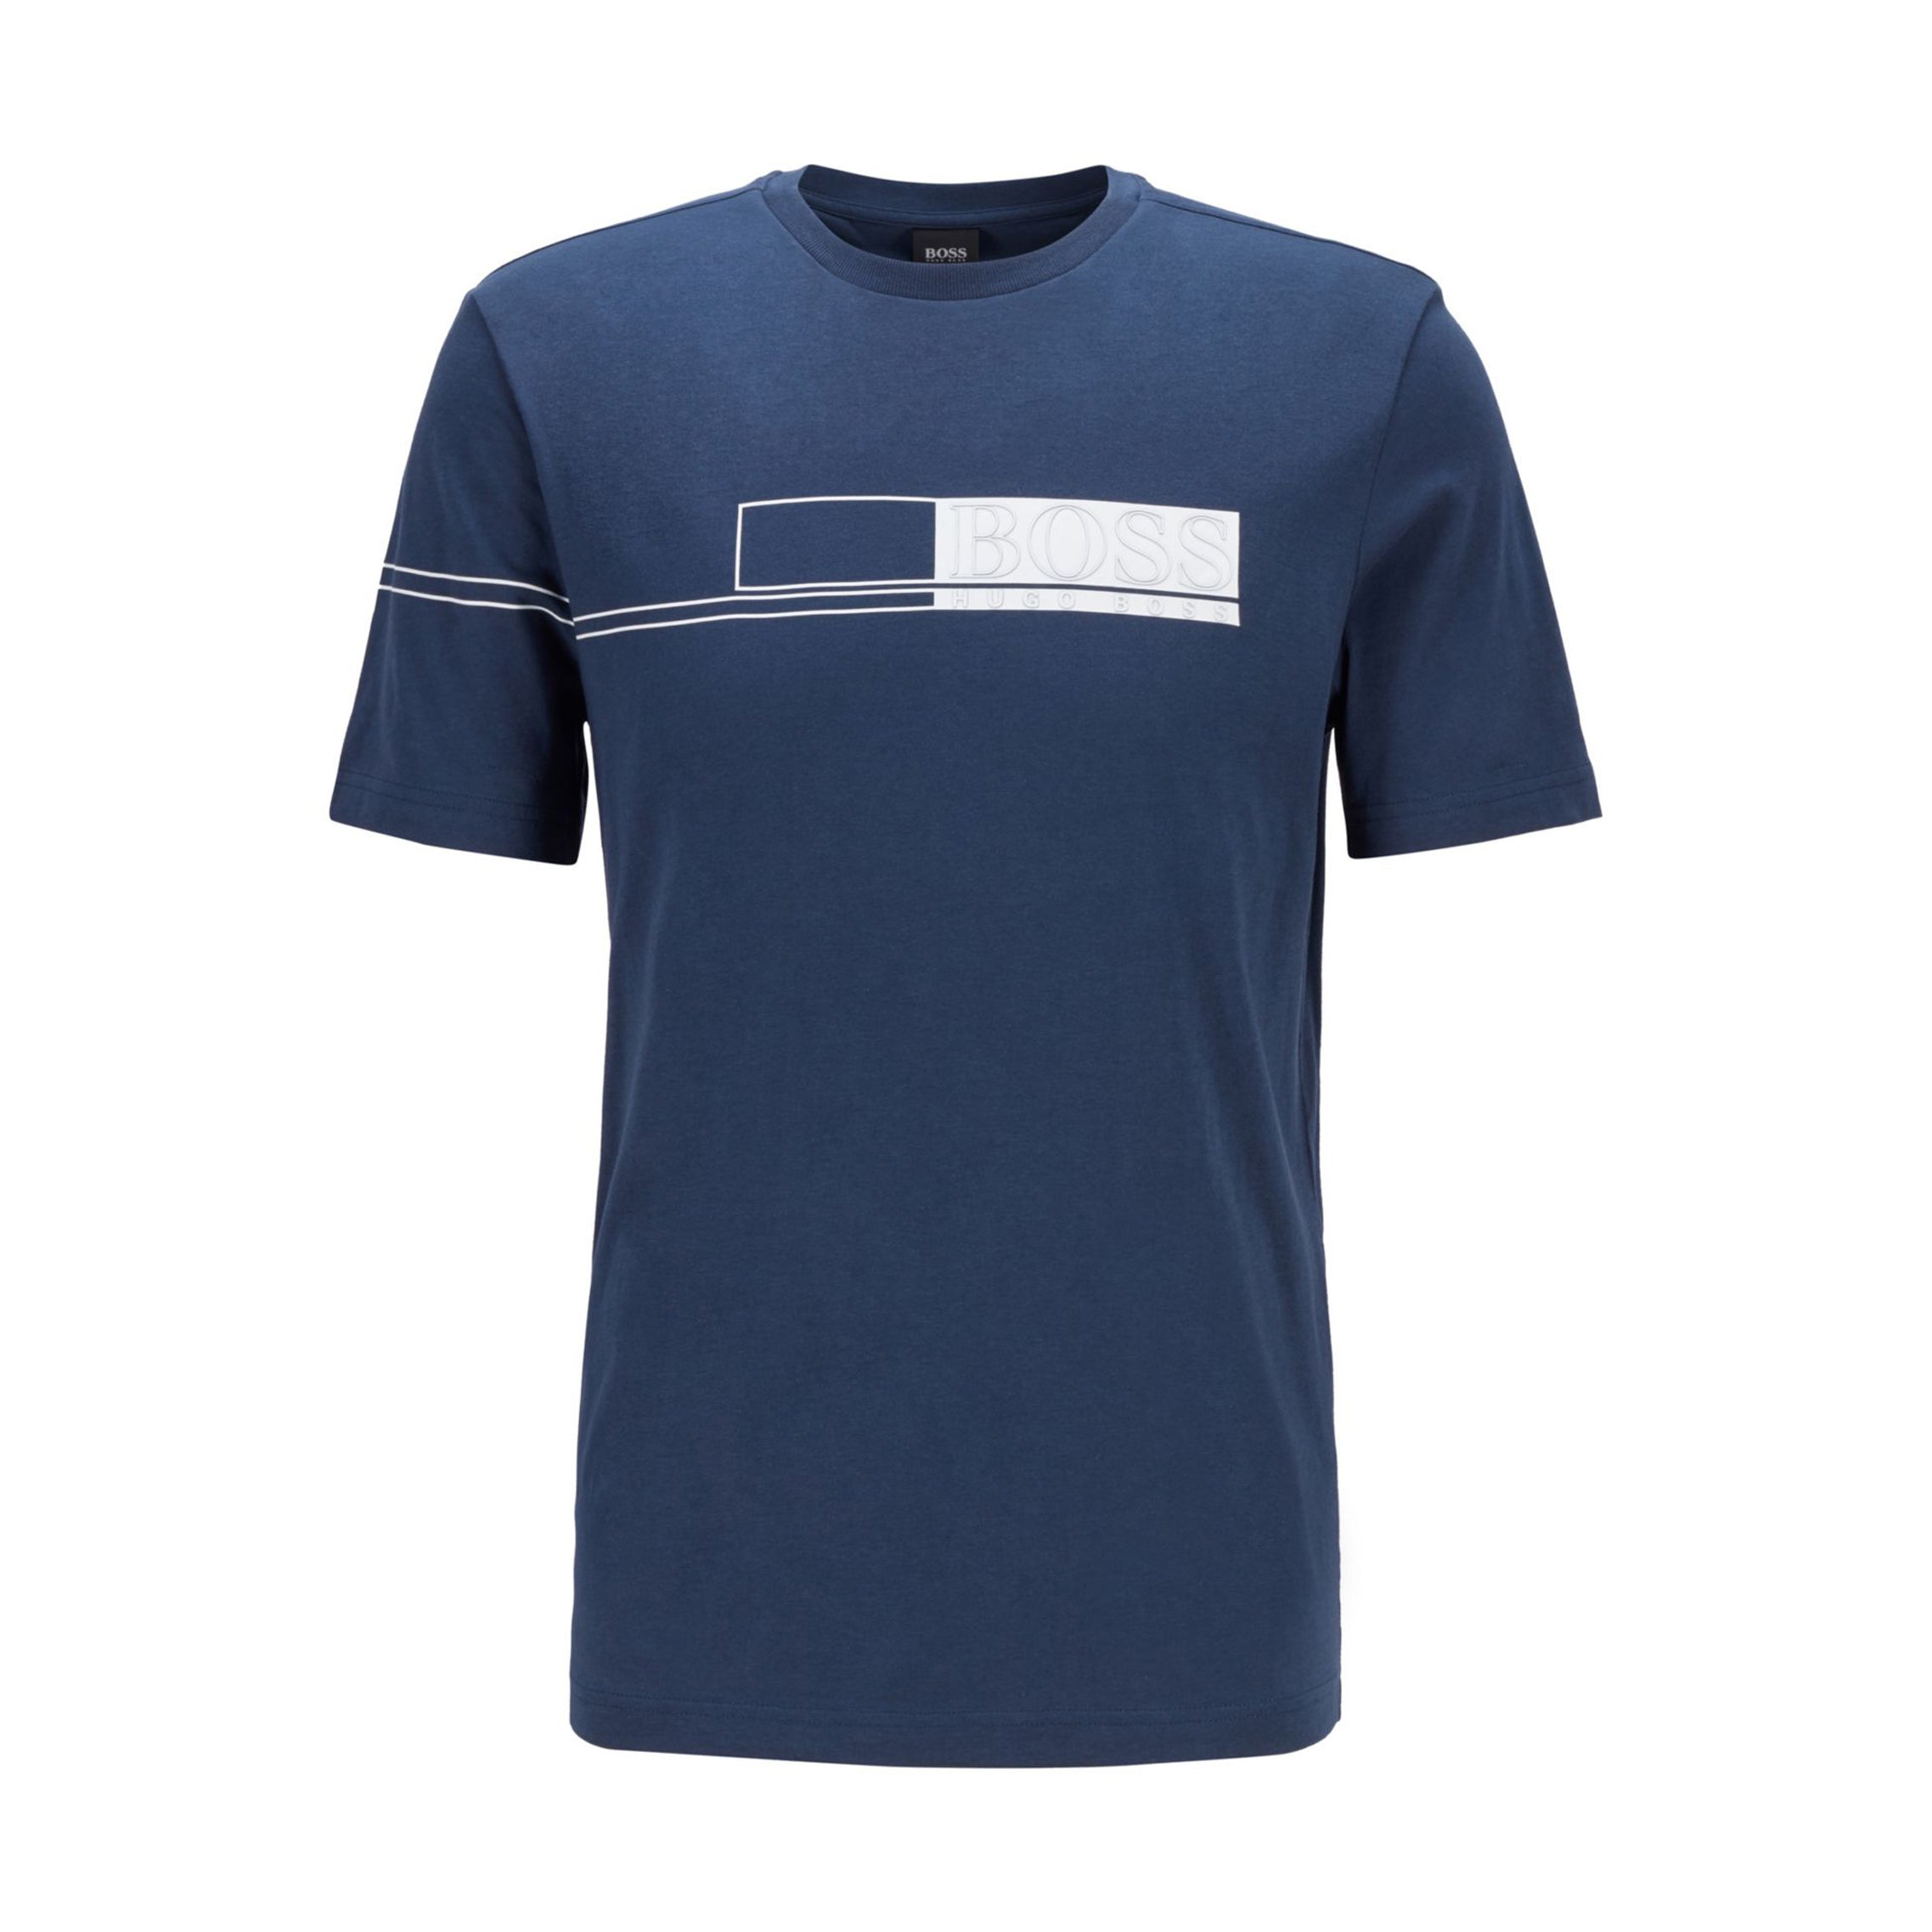 Hugo Boss Tee 1 Golf T-Shirt 2021